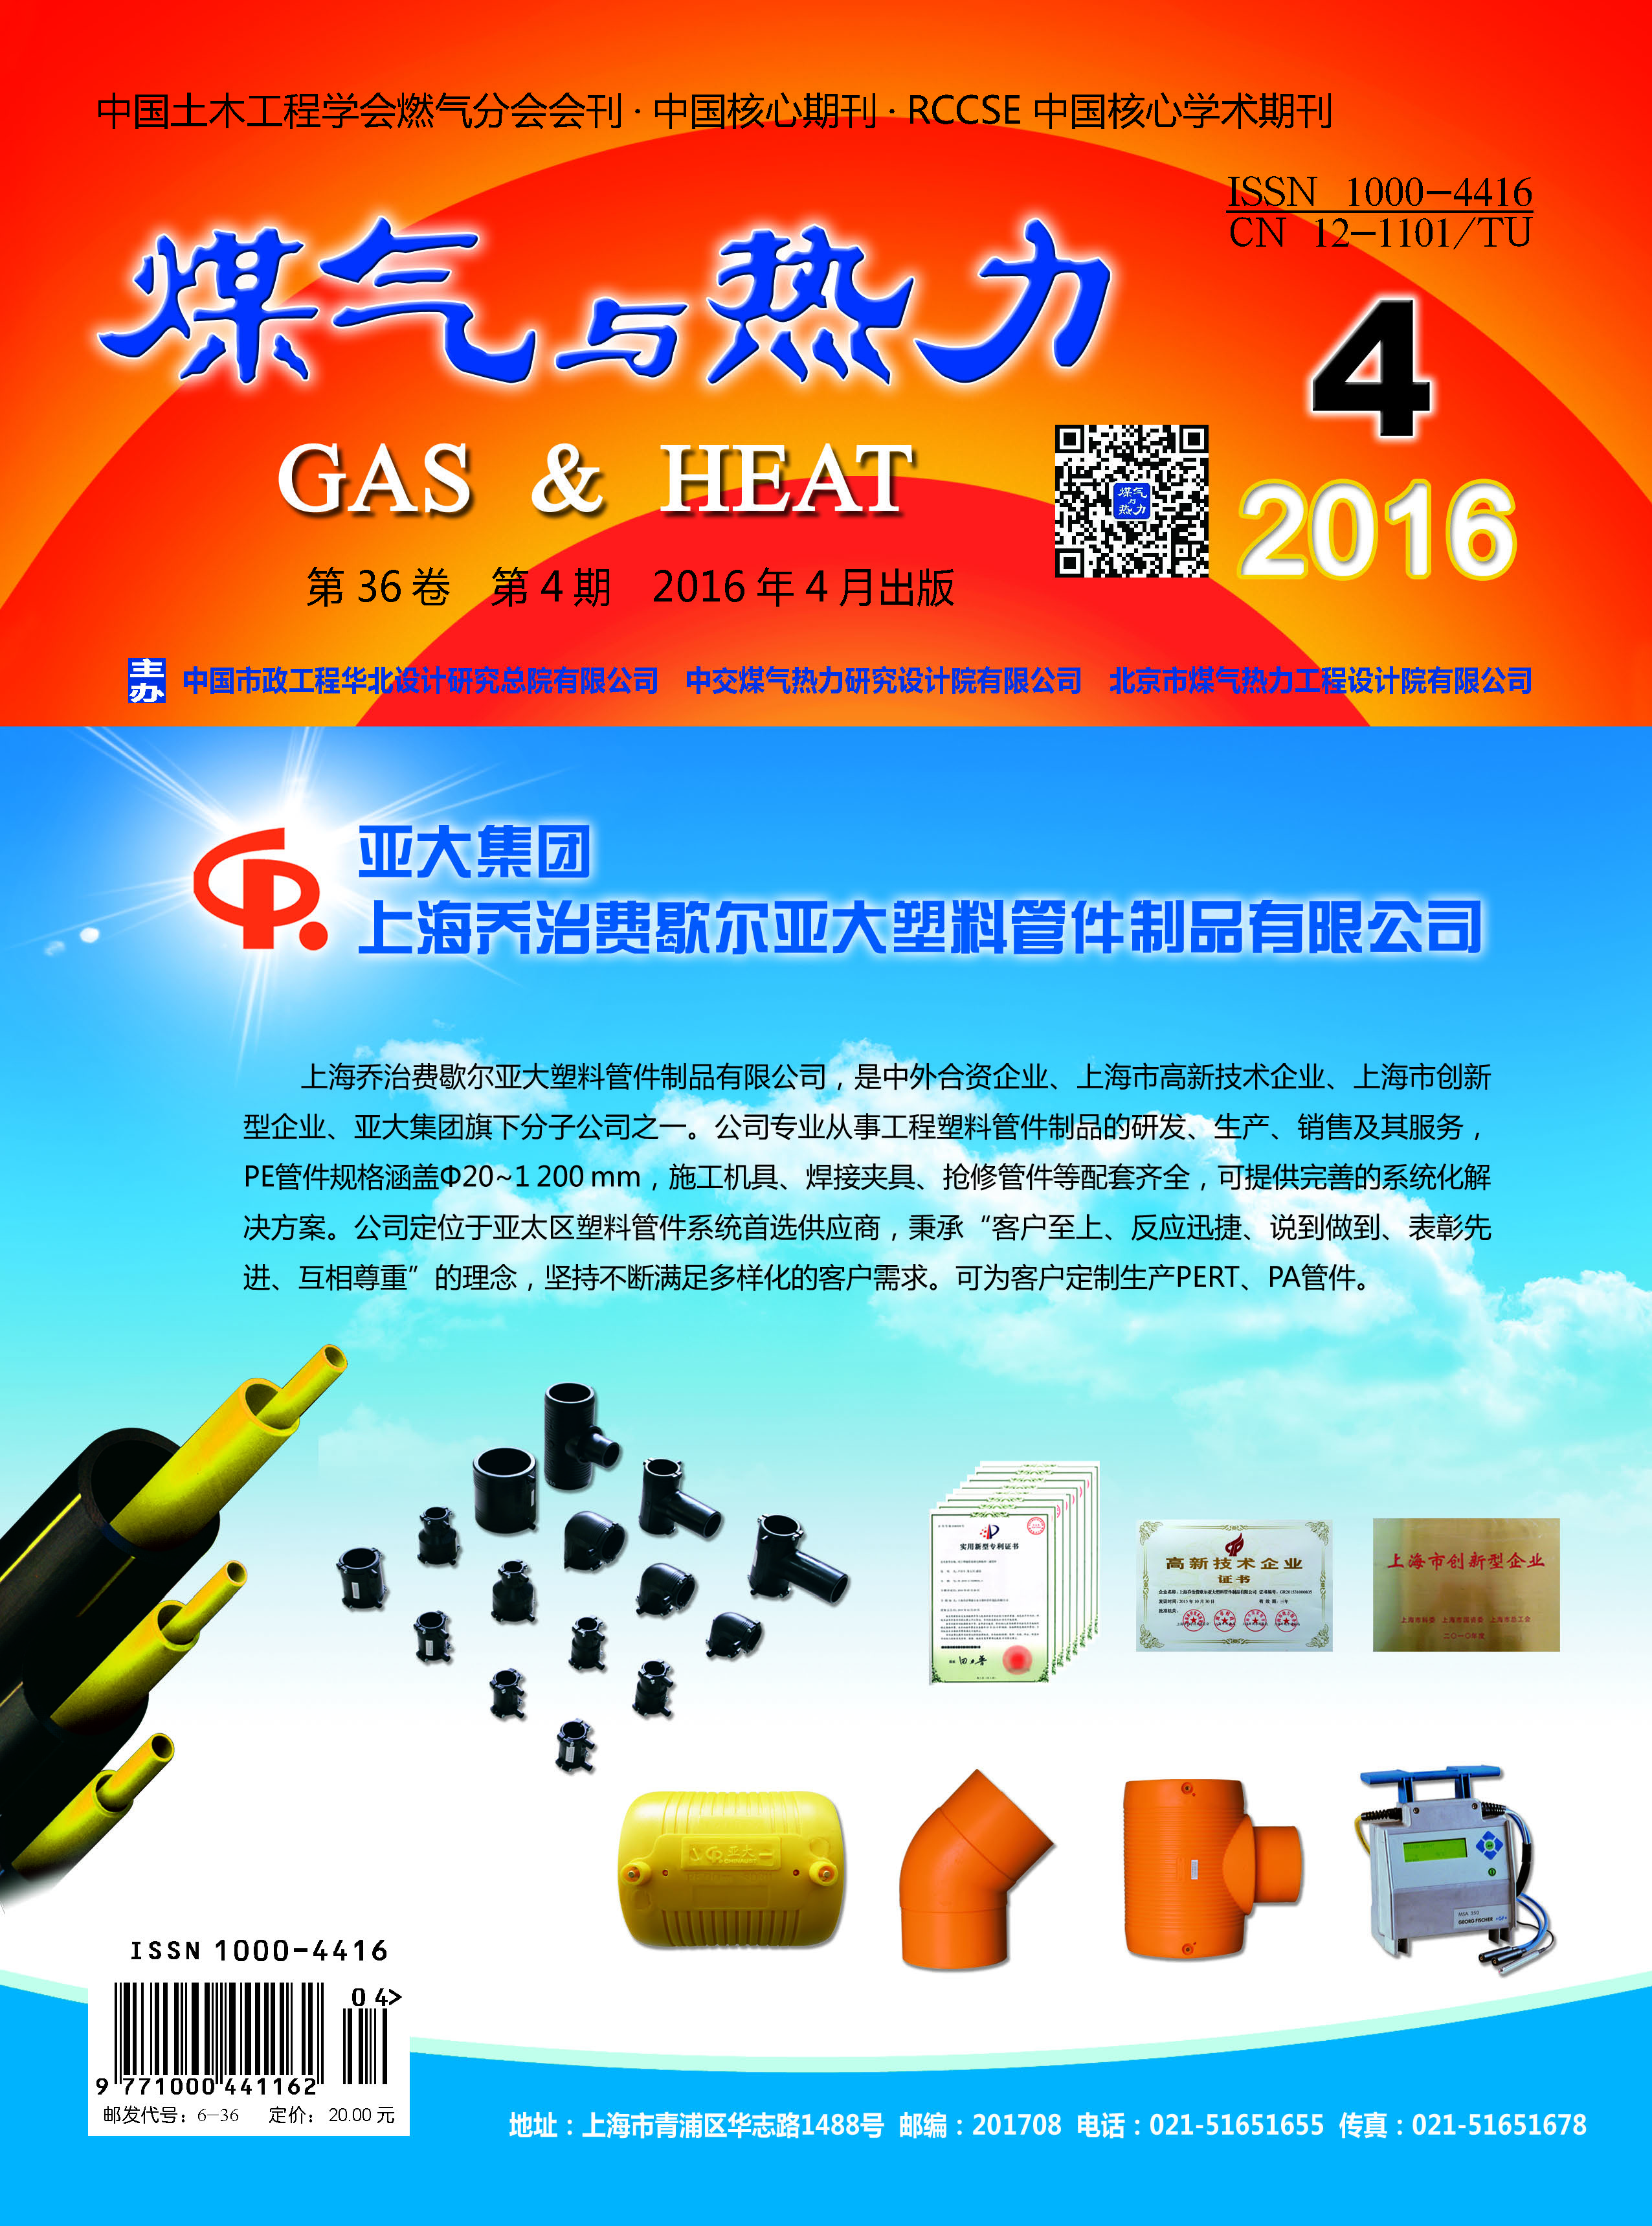 《煤气与热力》2016年4月刊